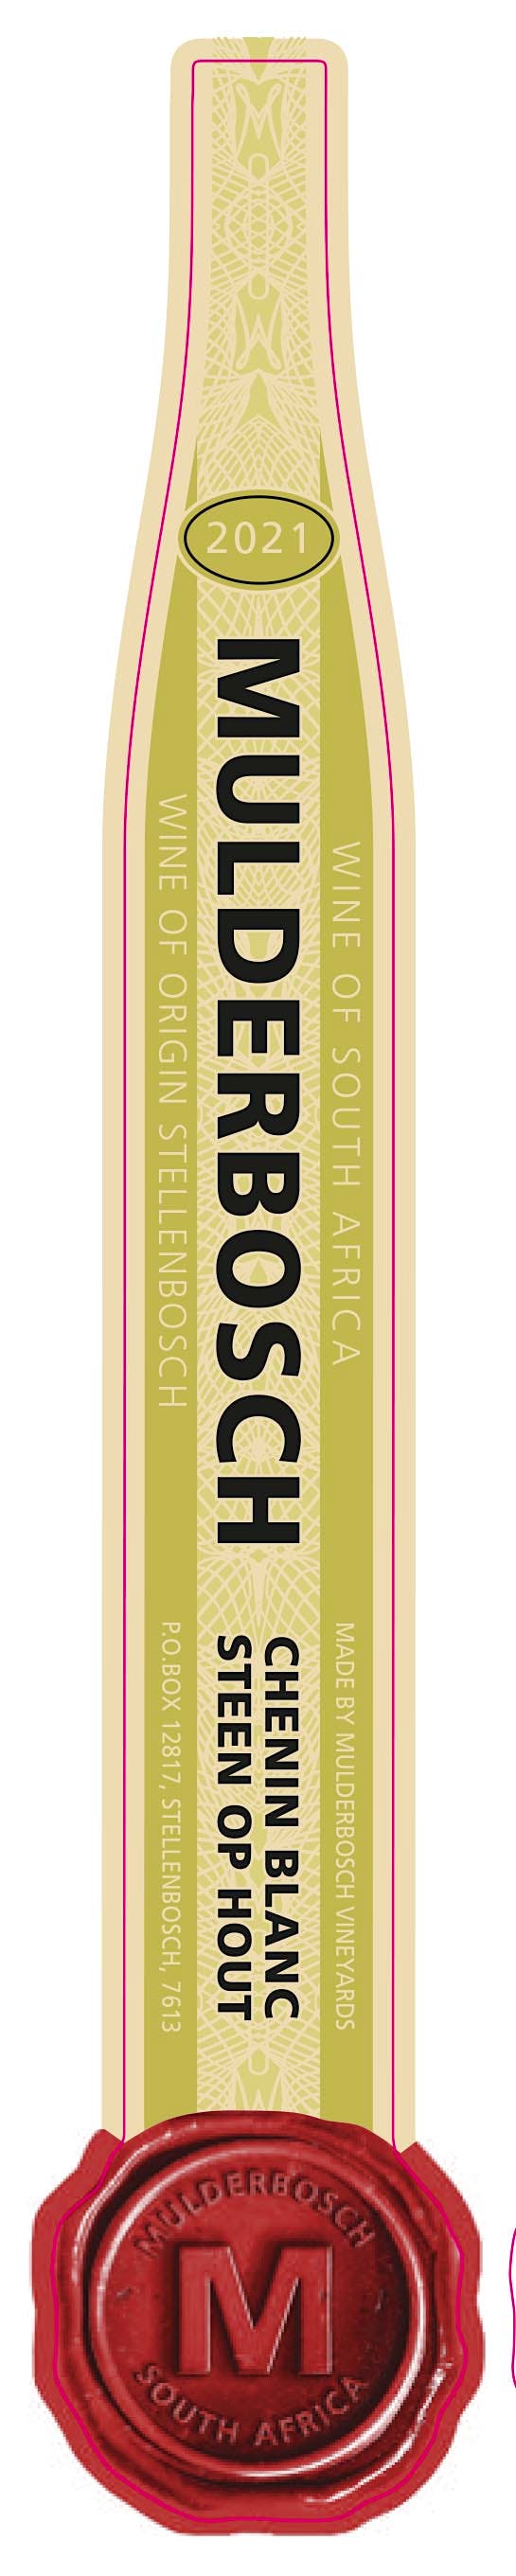 Label for Mulderbosch